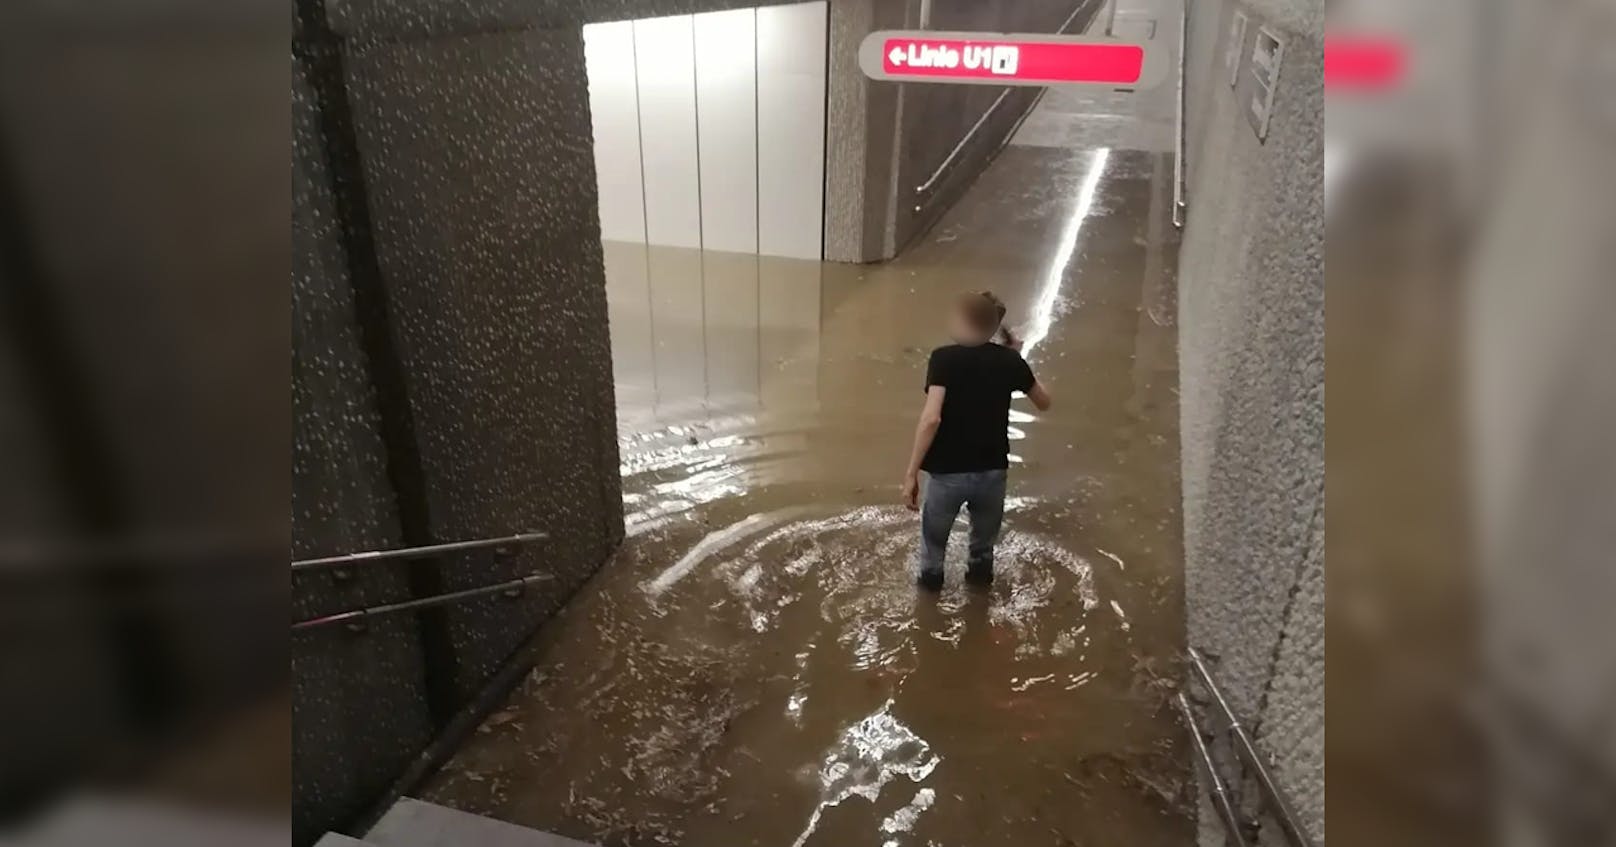 Ein Wiener musste durchs kniehohe Wasser waten, um zur U-Bahn zu kommen